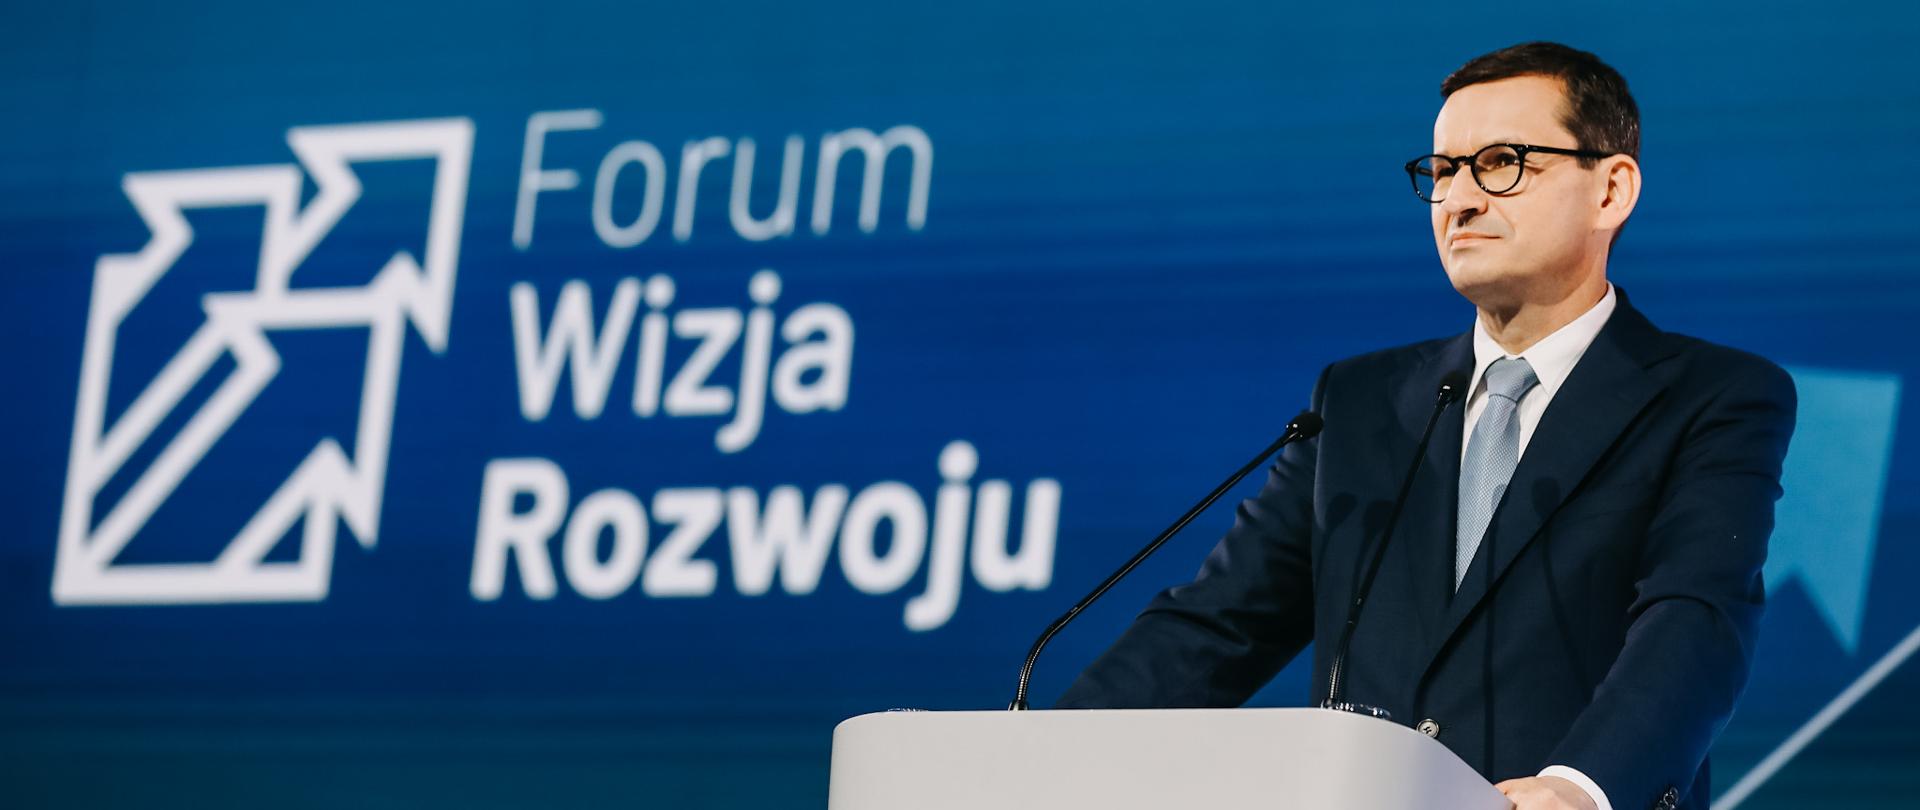 Premier Mateusz Morawiecki stoi przed mównicą a w tle plansza z napisem Forum Wizja Rozwoju.